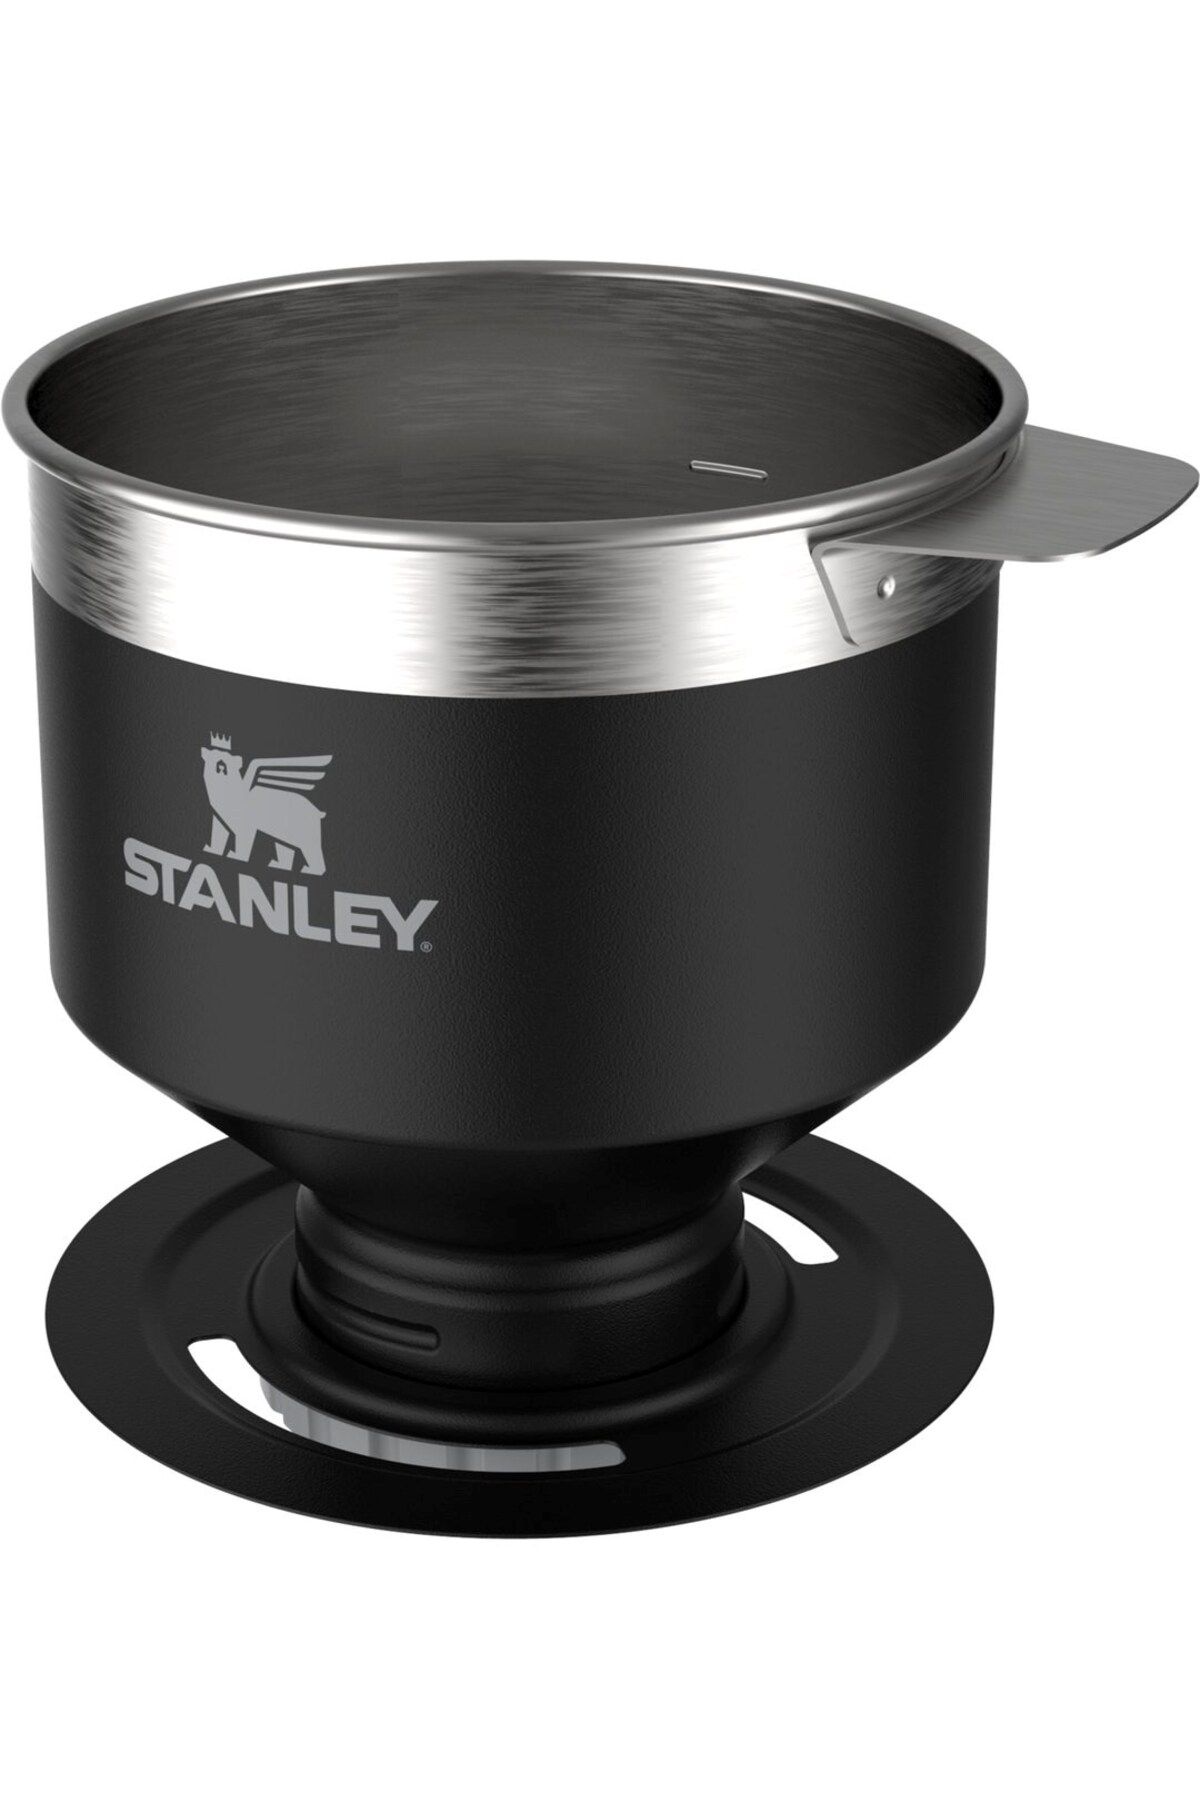 Stanley The Perfect Brew Pour Over Klasik Paslanmaz Çelik Kahve Demleyici 10-09383